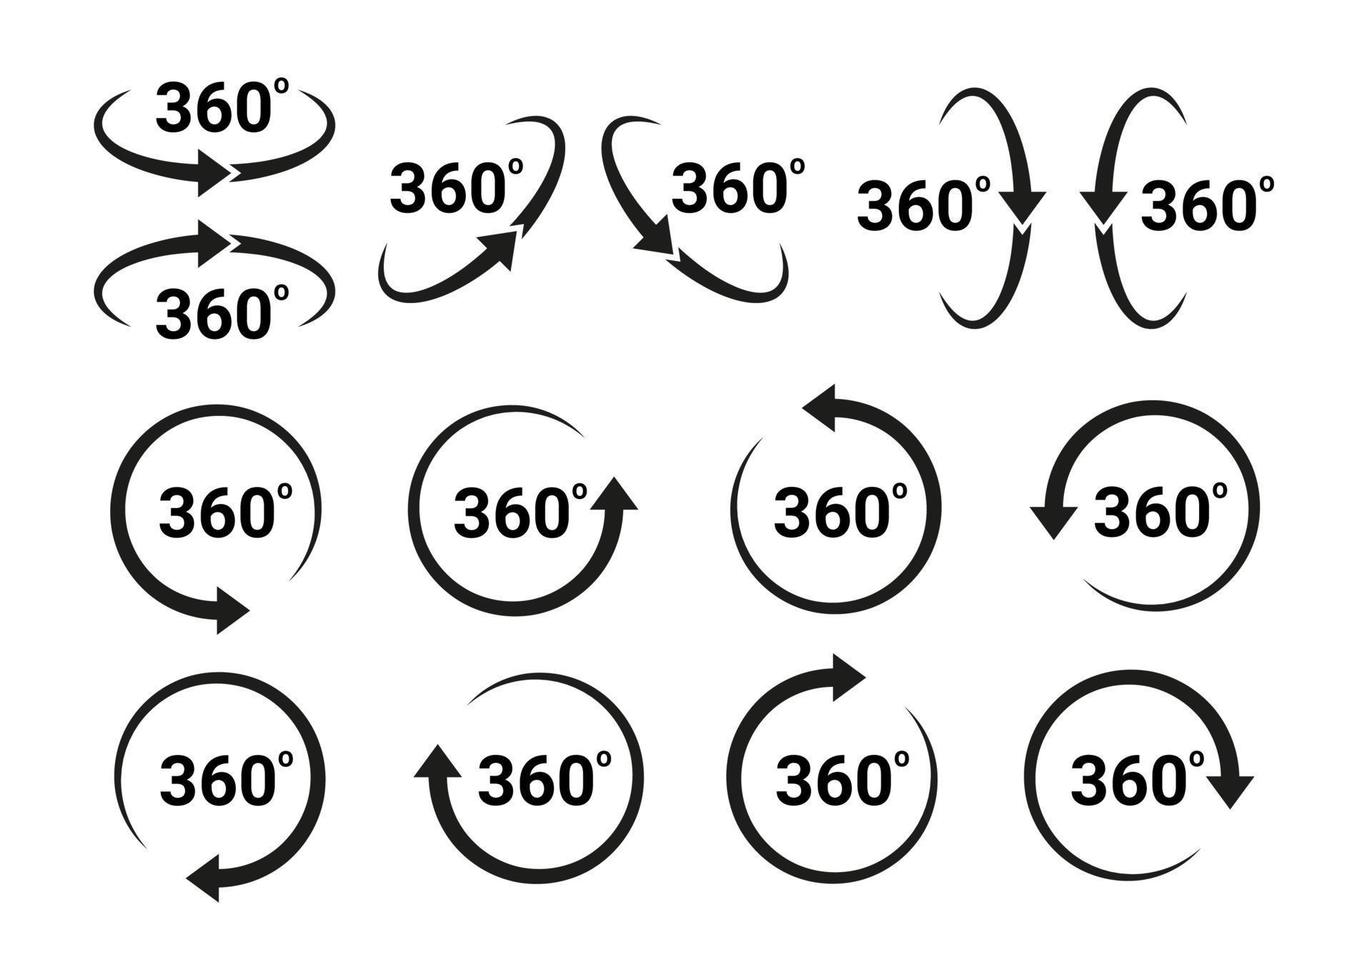 Flecha de 360 grados, gire alrededor del icono del conjunto. signos de círculo vista vertical, horizontal y diagonal con rotación de flechas a 360 grados. realidad virtual. ciclo de rotación, símbolo de movimiento circular. vector